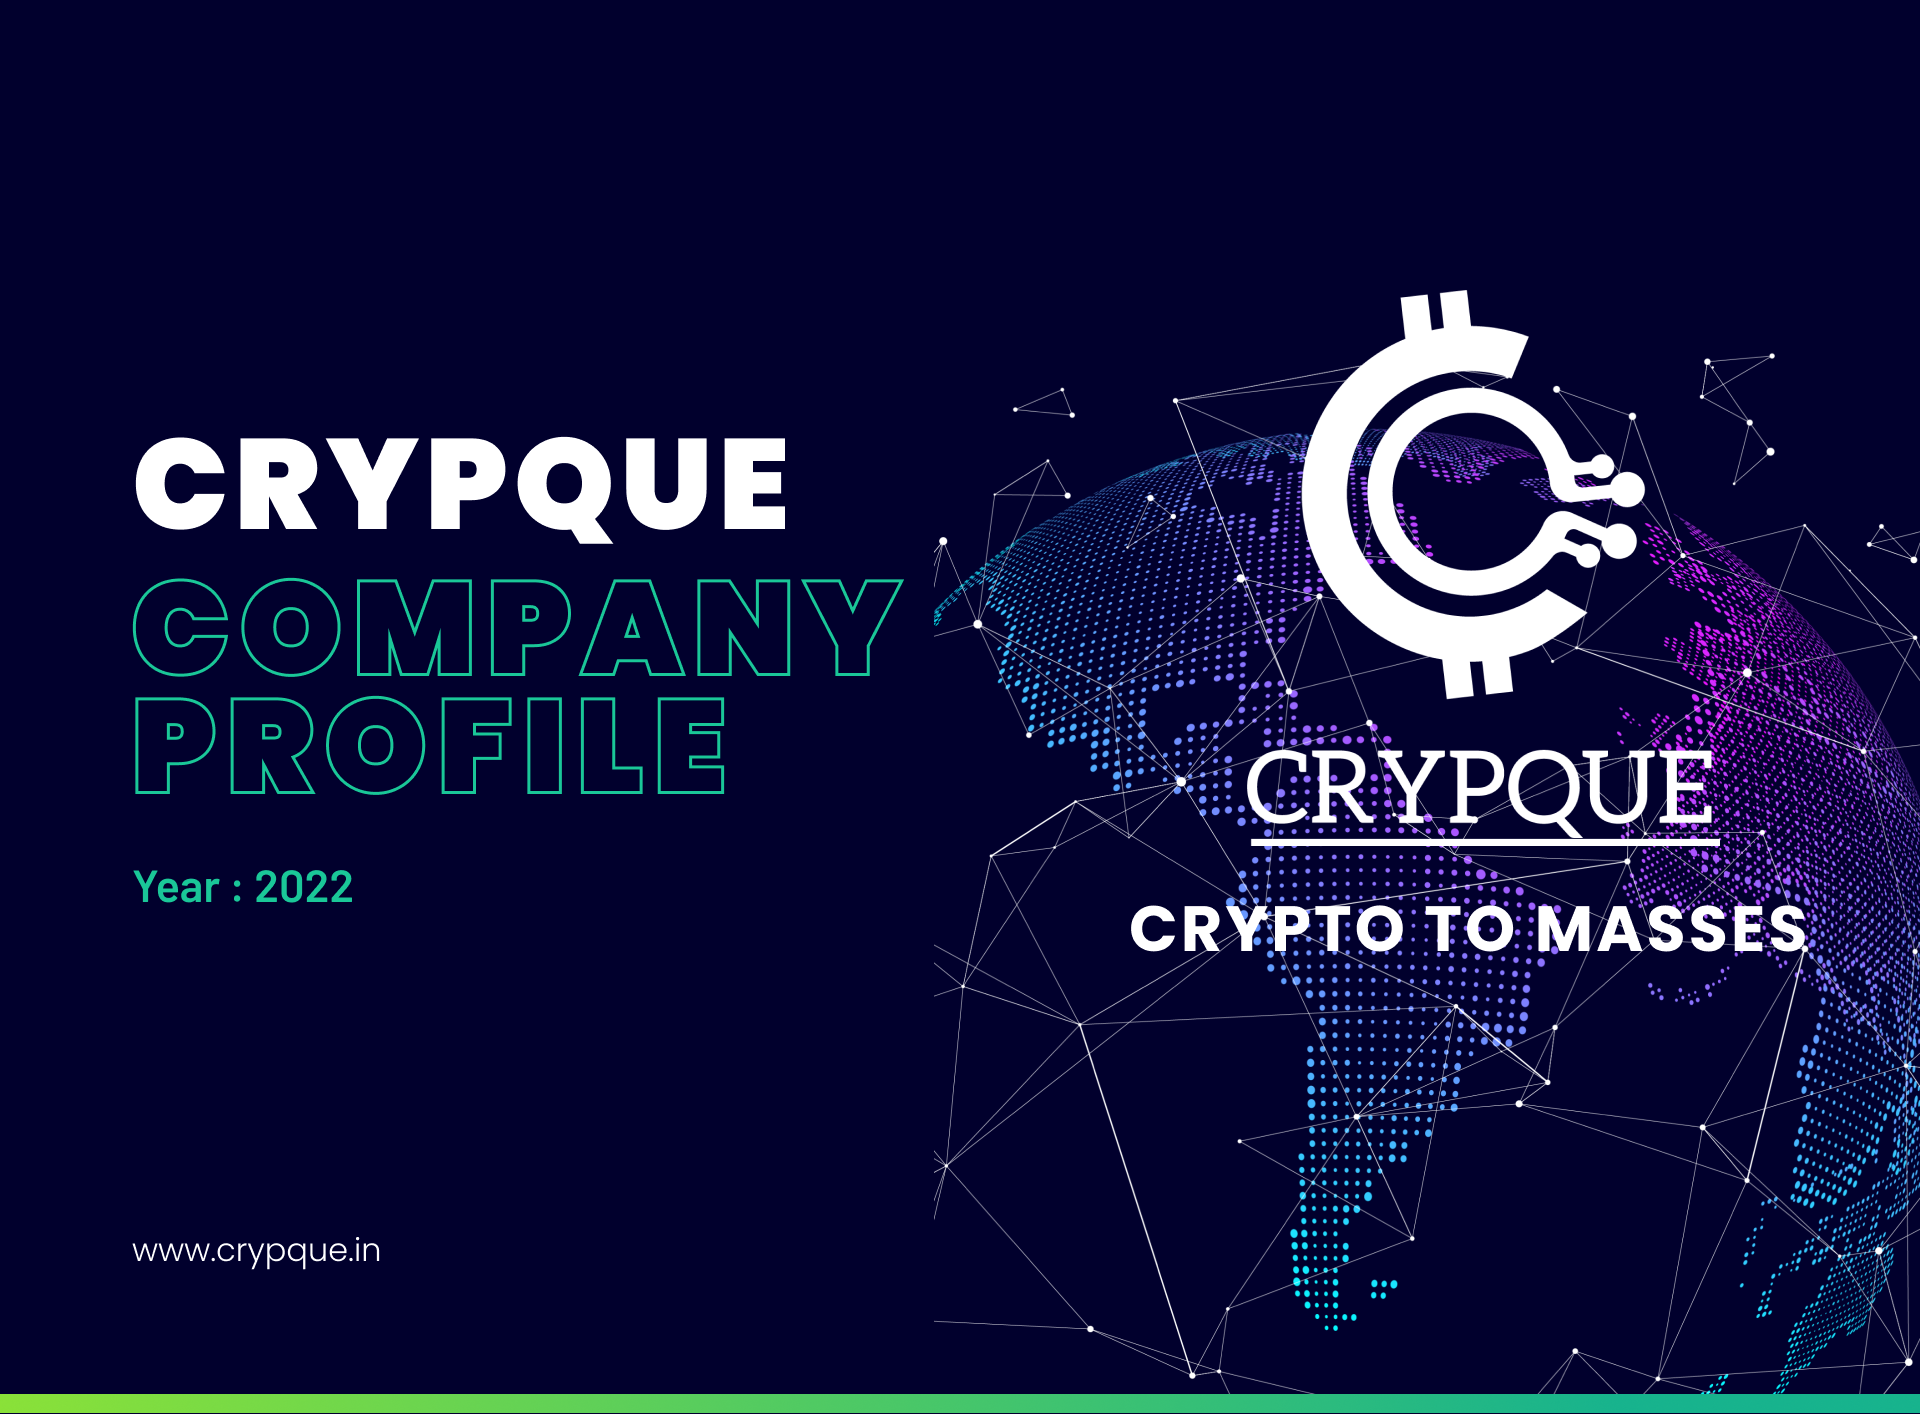 Crypque Company Profile